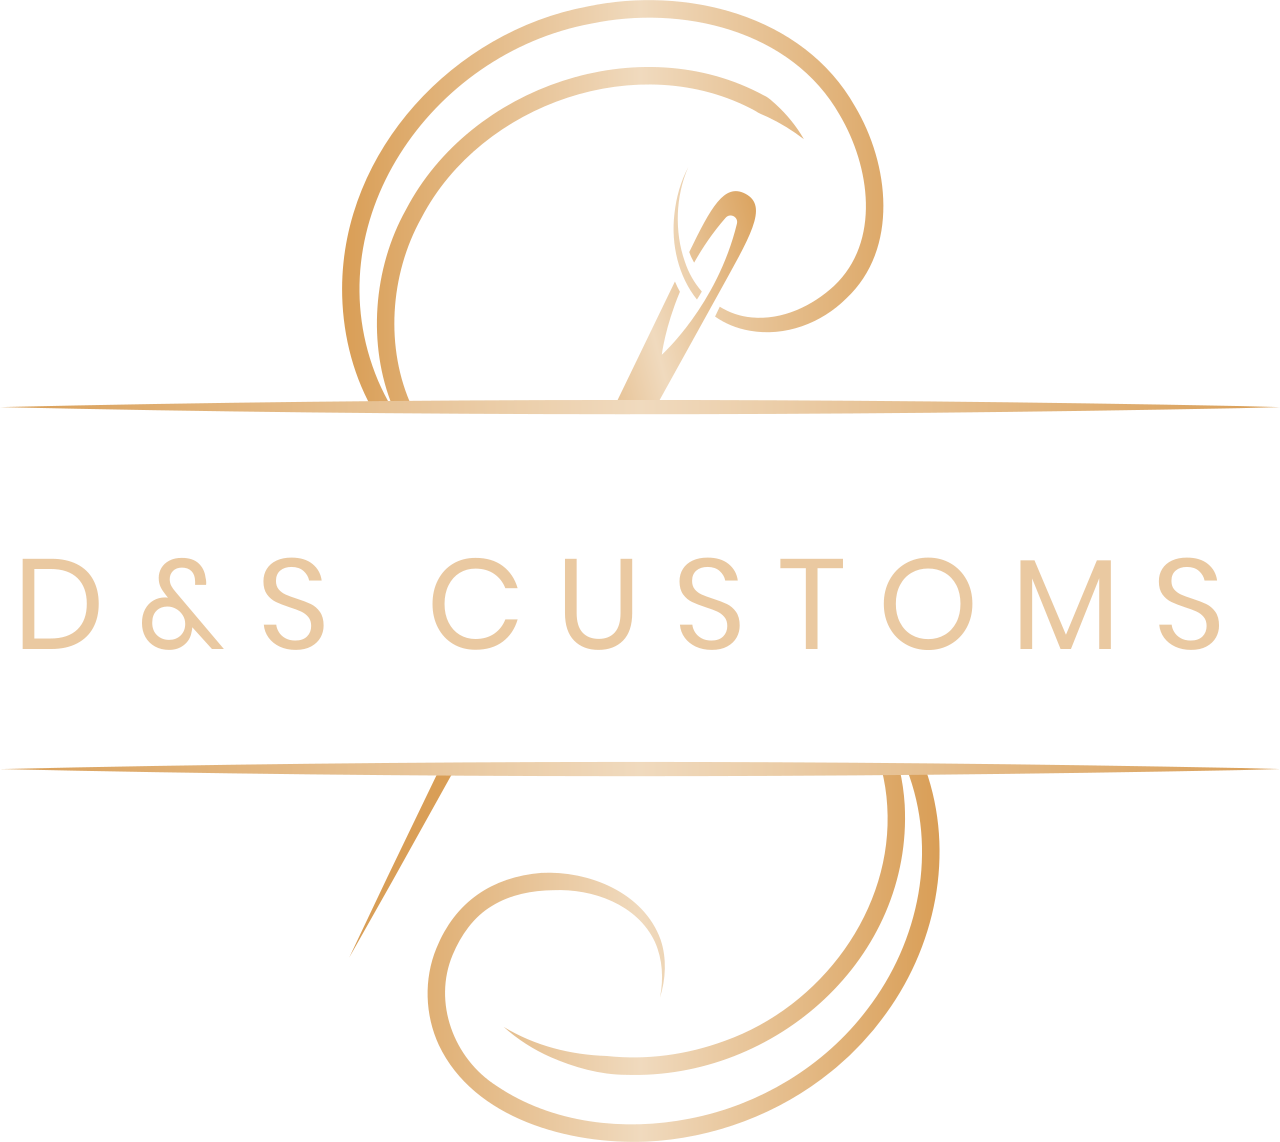 D&S Customs's logo